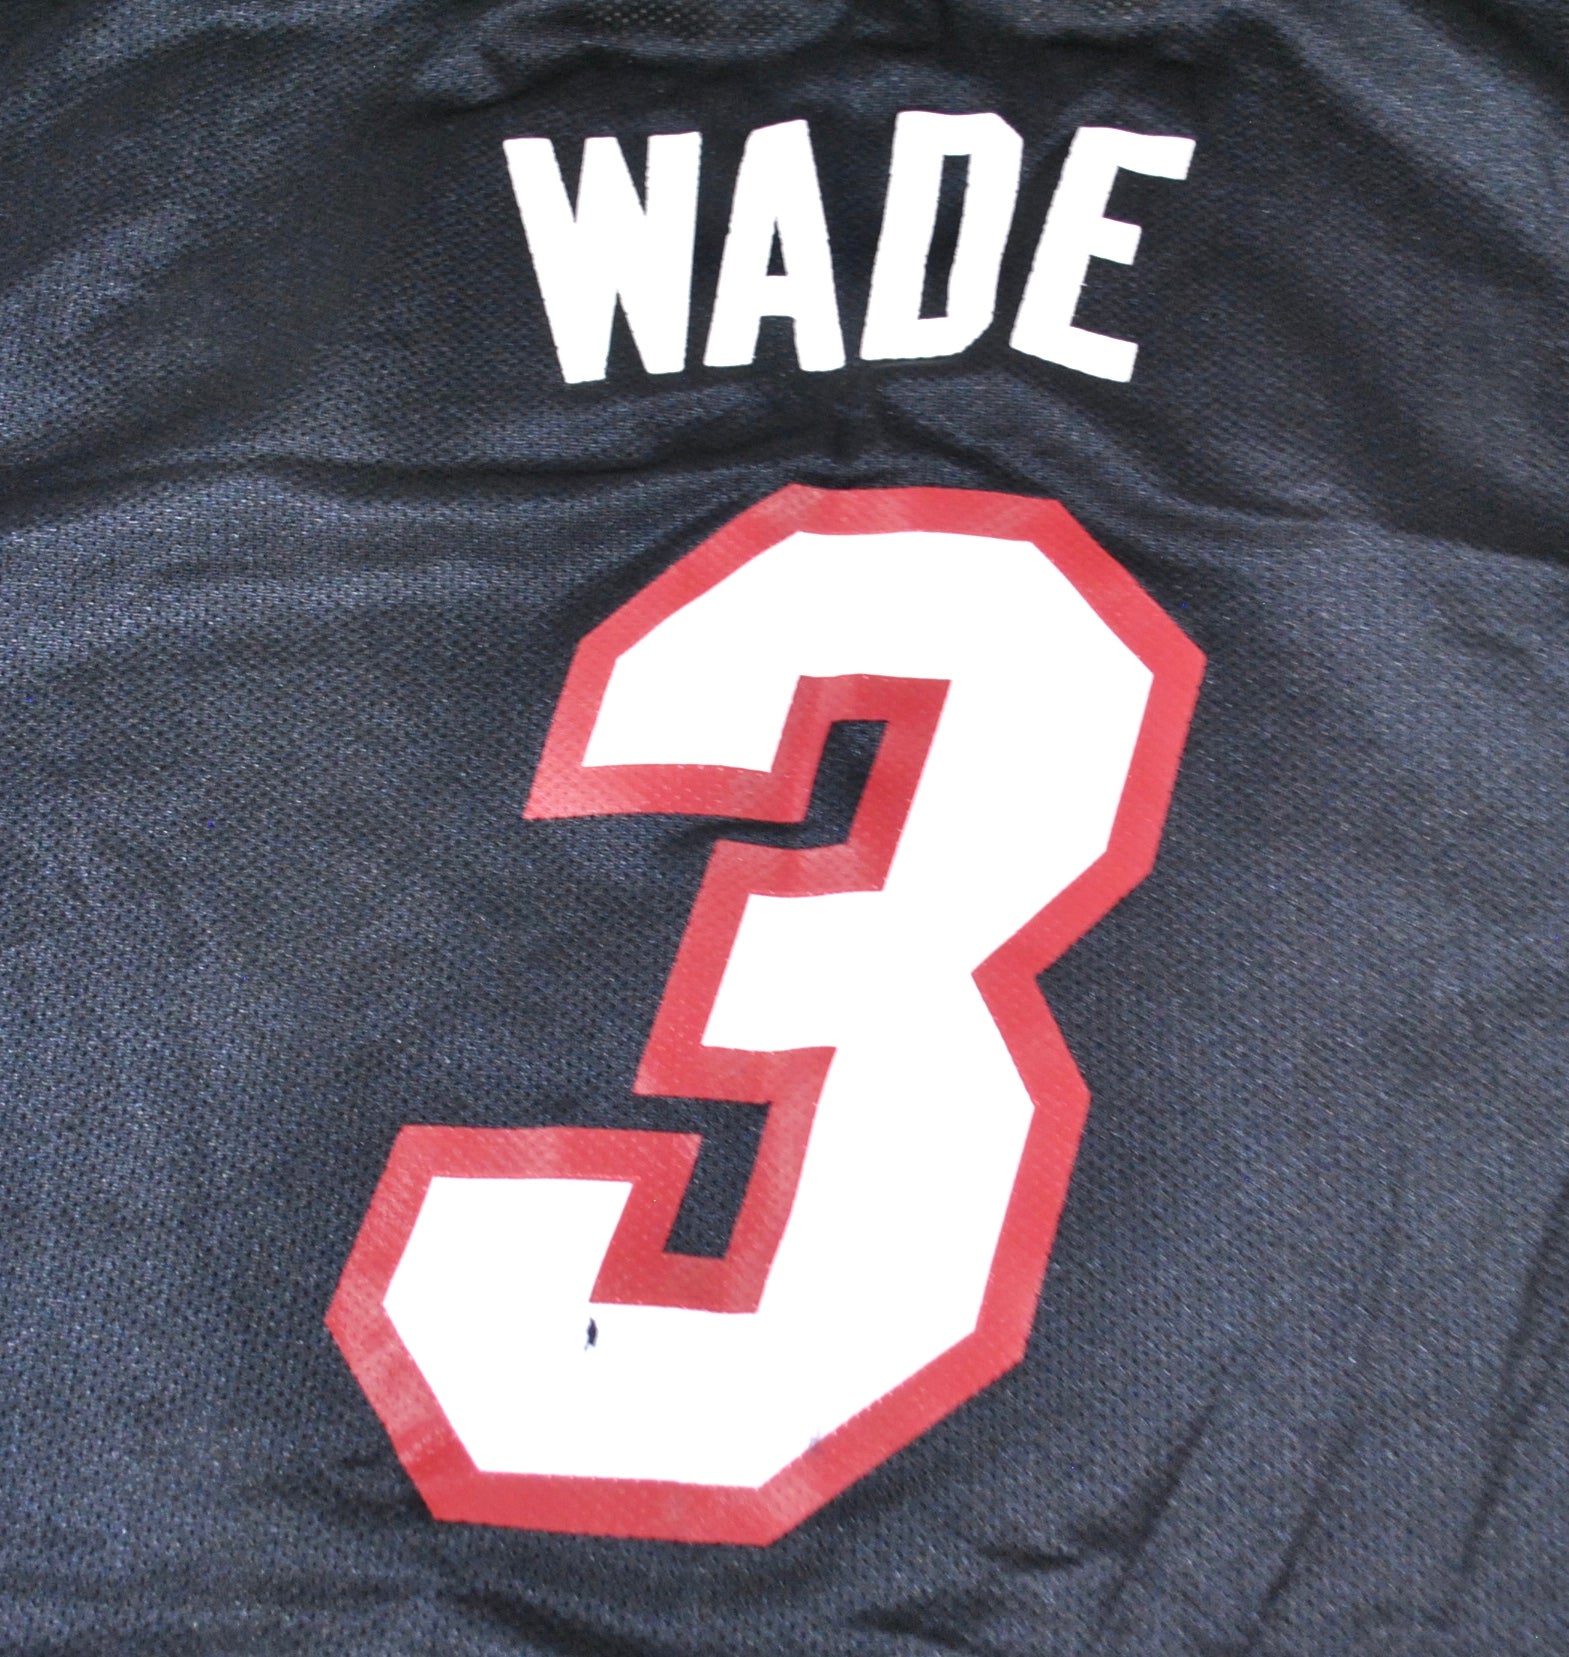 Dwayne Wade Miami Heat Adidas Jersey Size XL – the basement